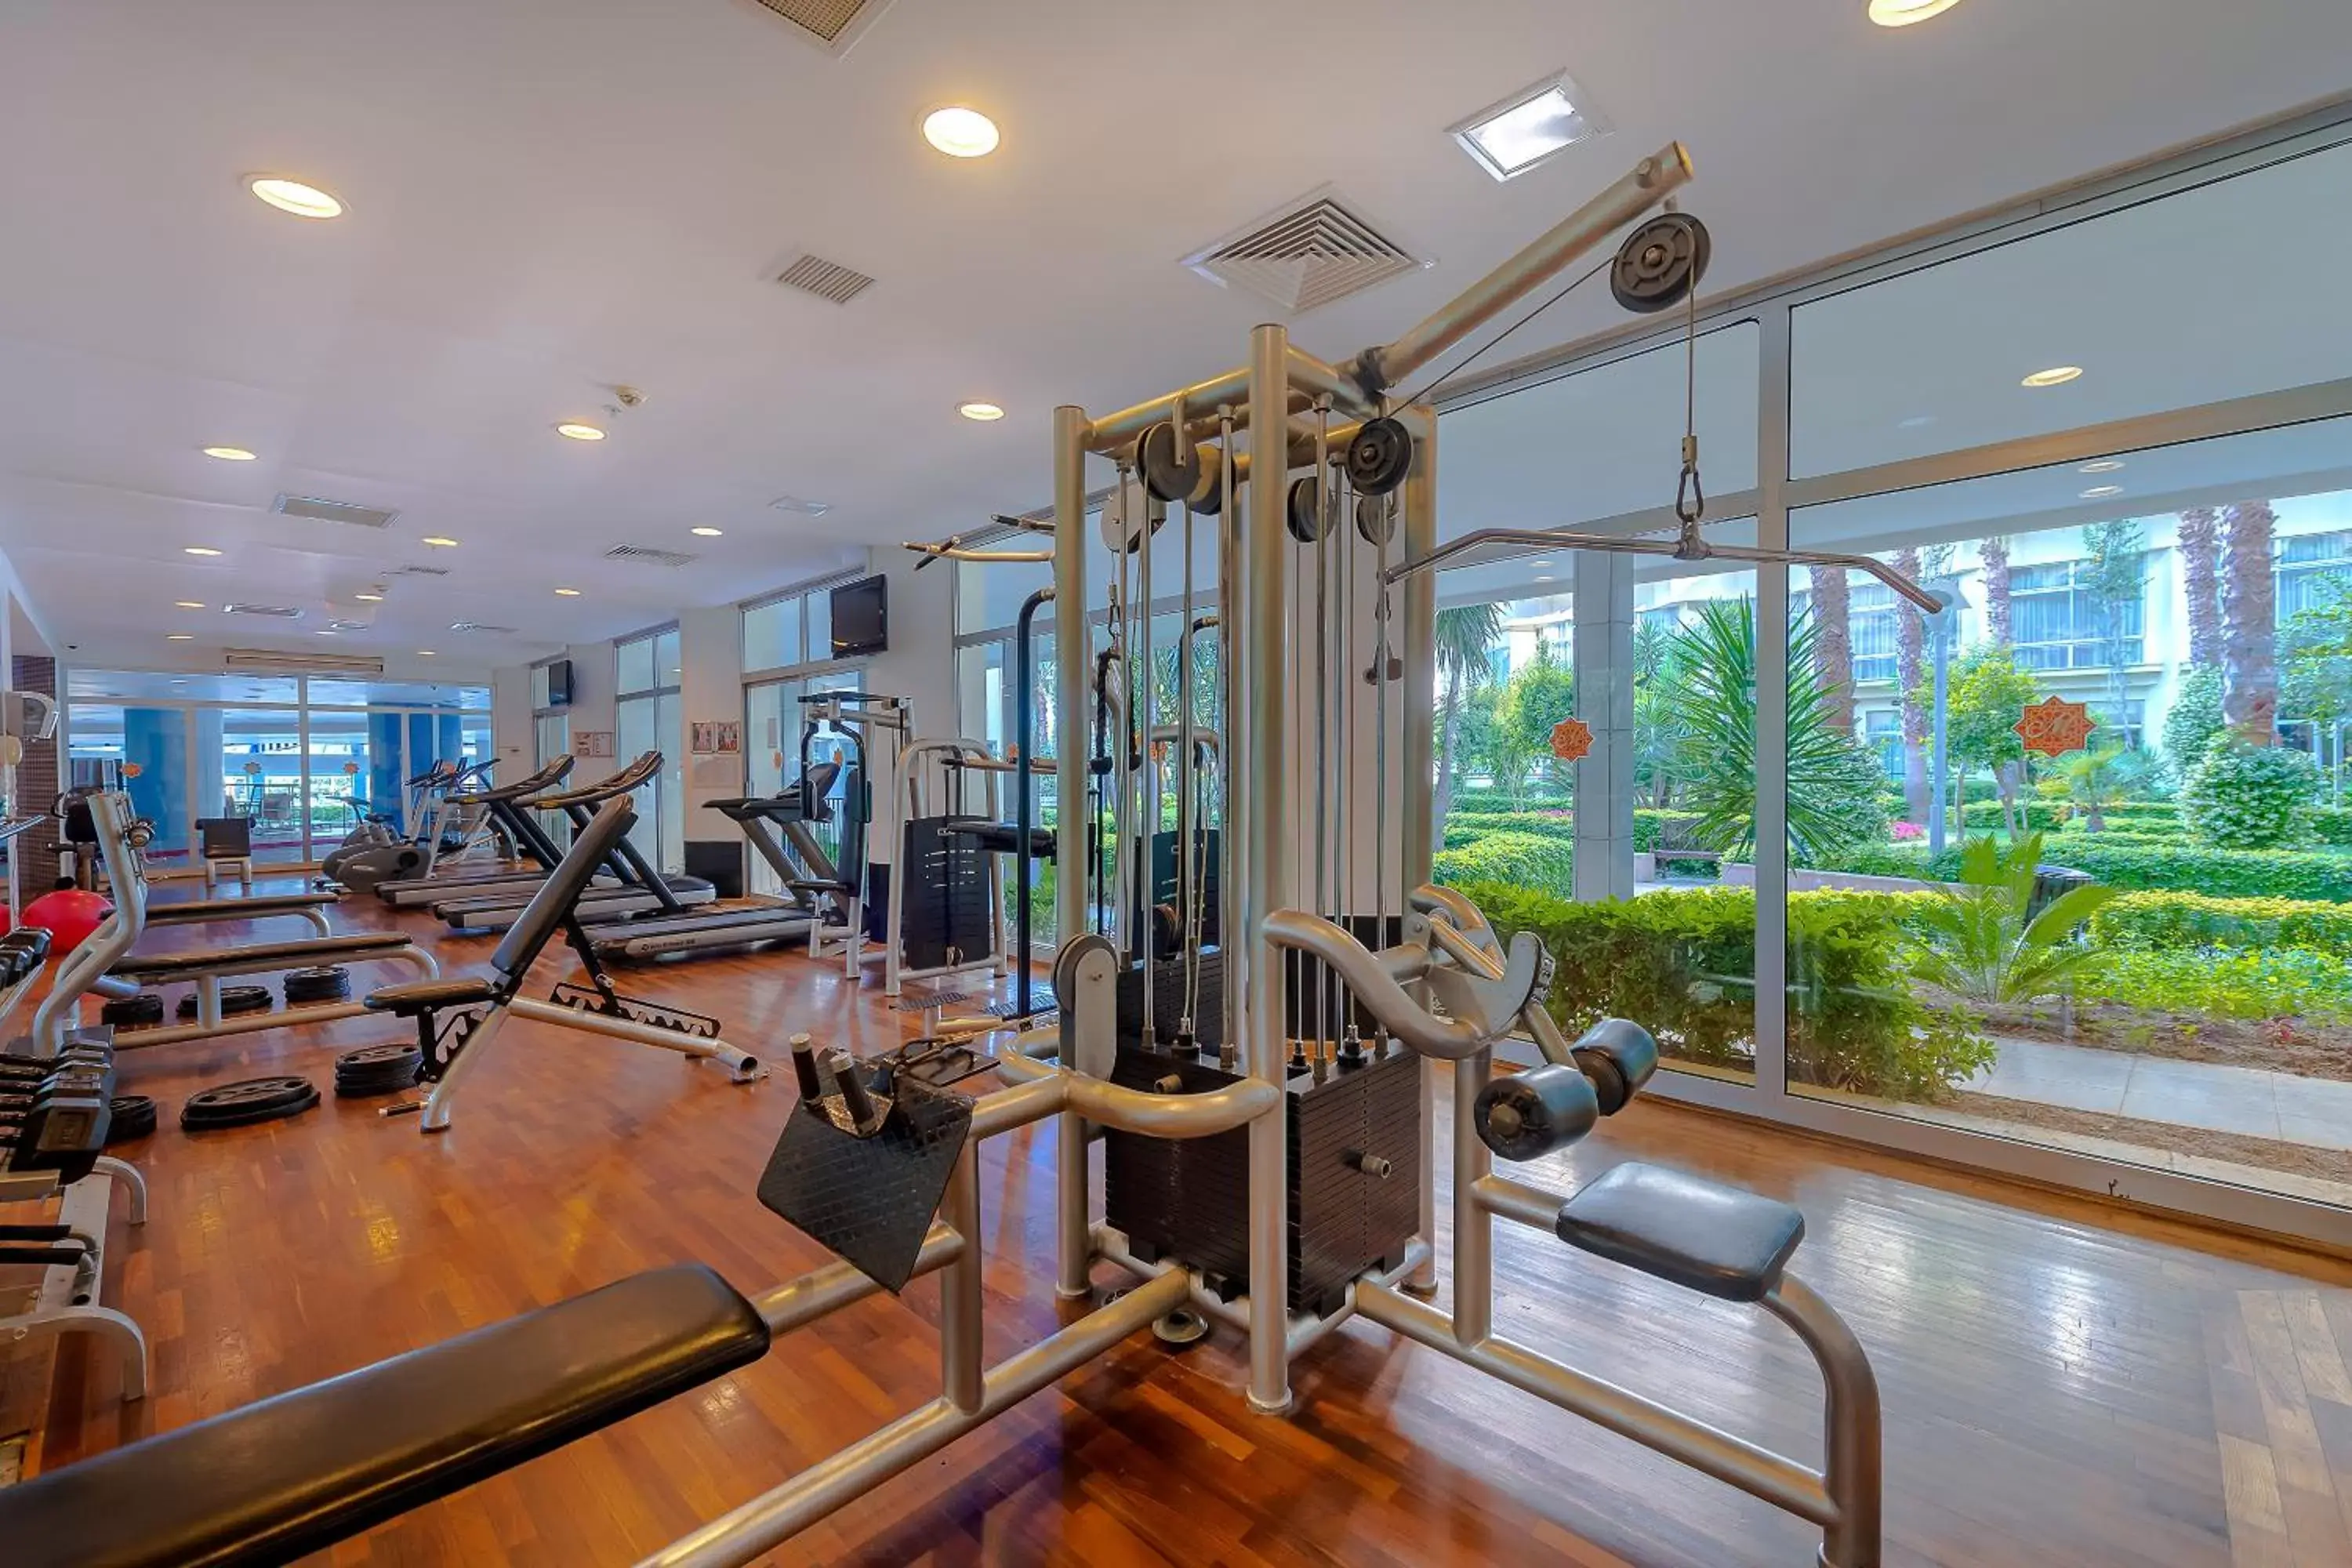 Fitness centre/facilities, Fitness Center/Facilities in Mukarnas Spa & Resort Hotel